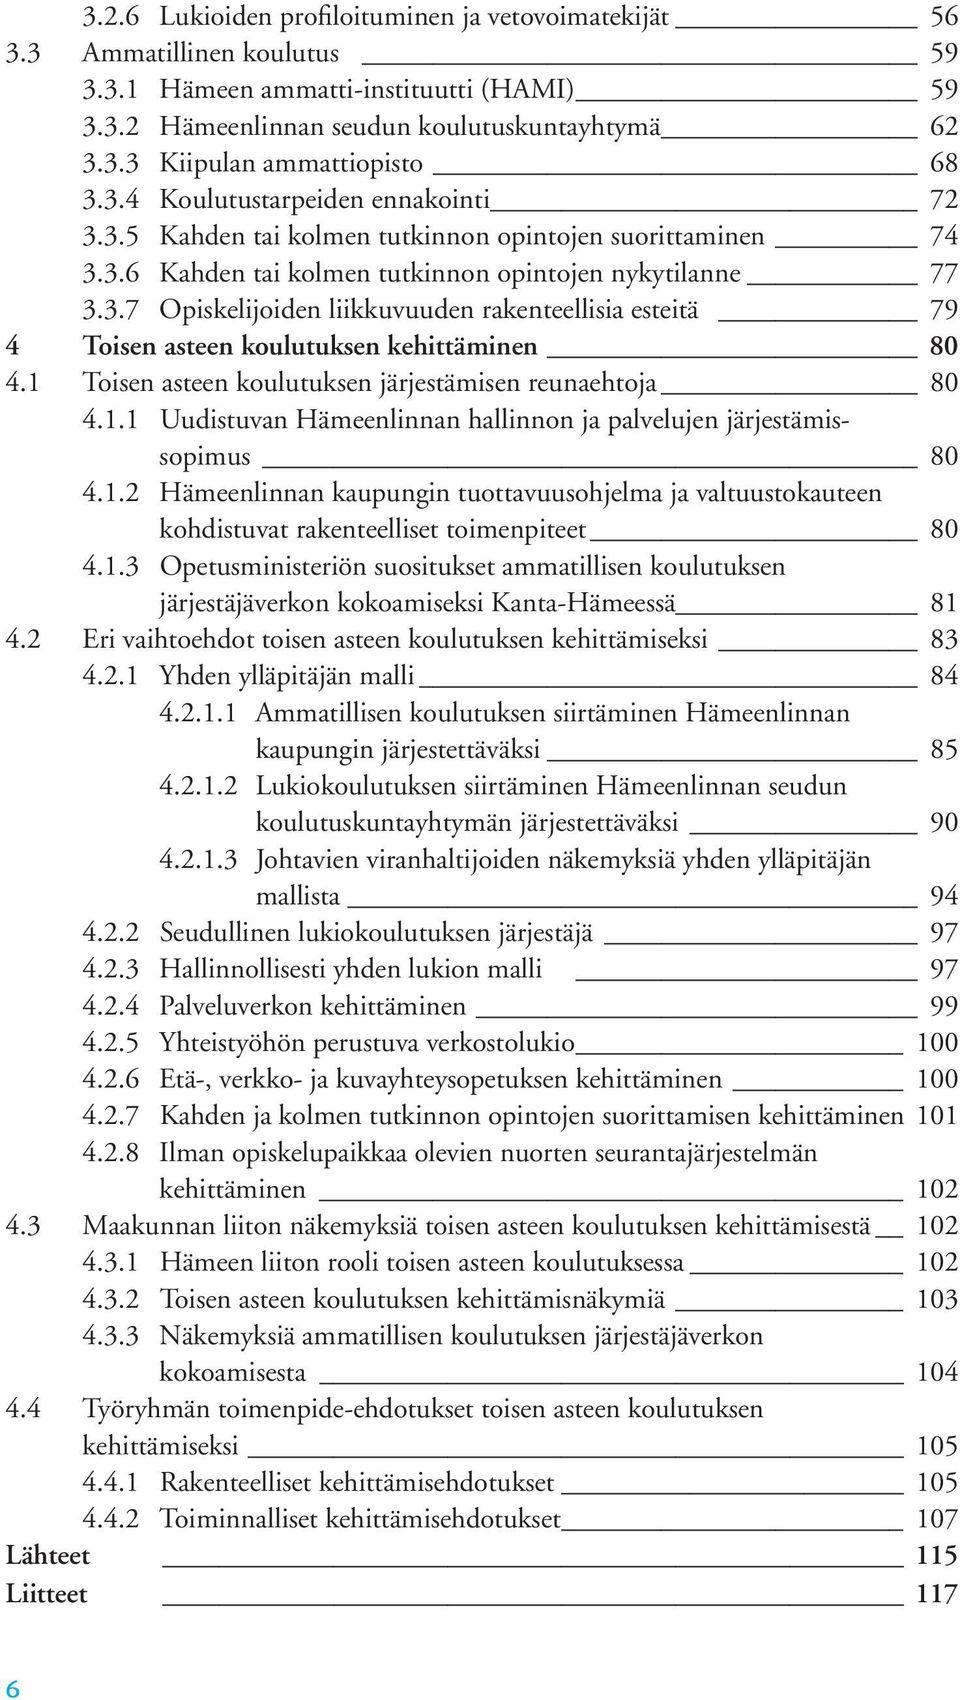 1 Toisen asteen koulutuksen järjestämisen reunaehtoja 80 4.1.1 Uudistuvan Hämeenlinnan hallinnon ja palvelujen järjestämissopimus 80 4.1.2 Hämeenlinnan kaupungin tuottavuusohjelma ja valtuustokauteen kohdistuvat rakenteelliset toimenpiteet 80 4.